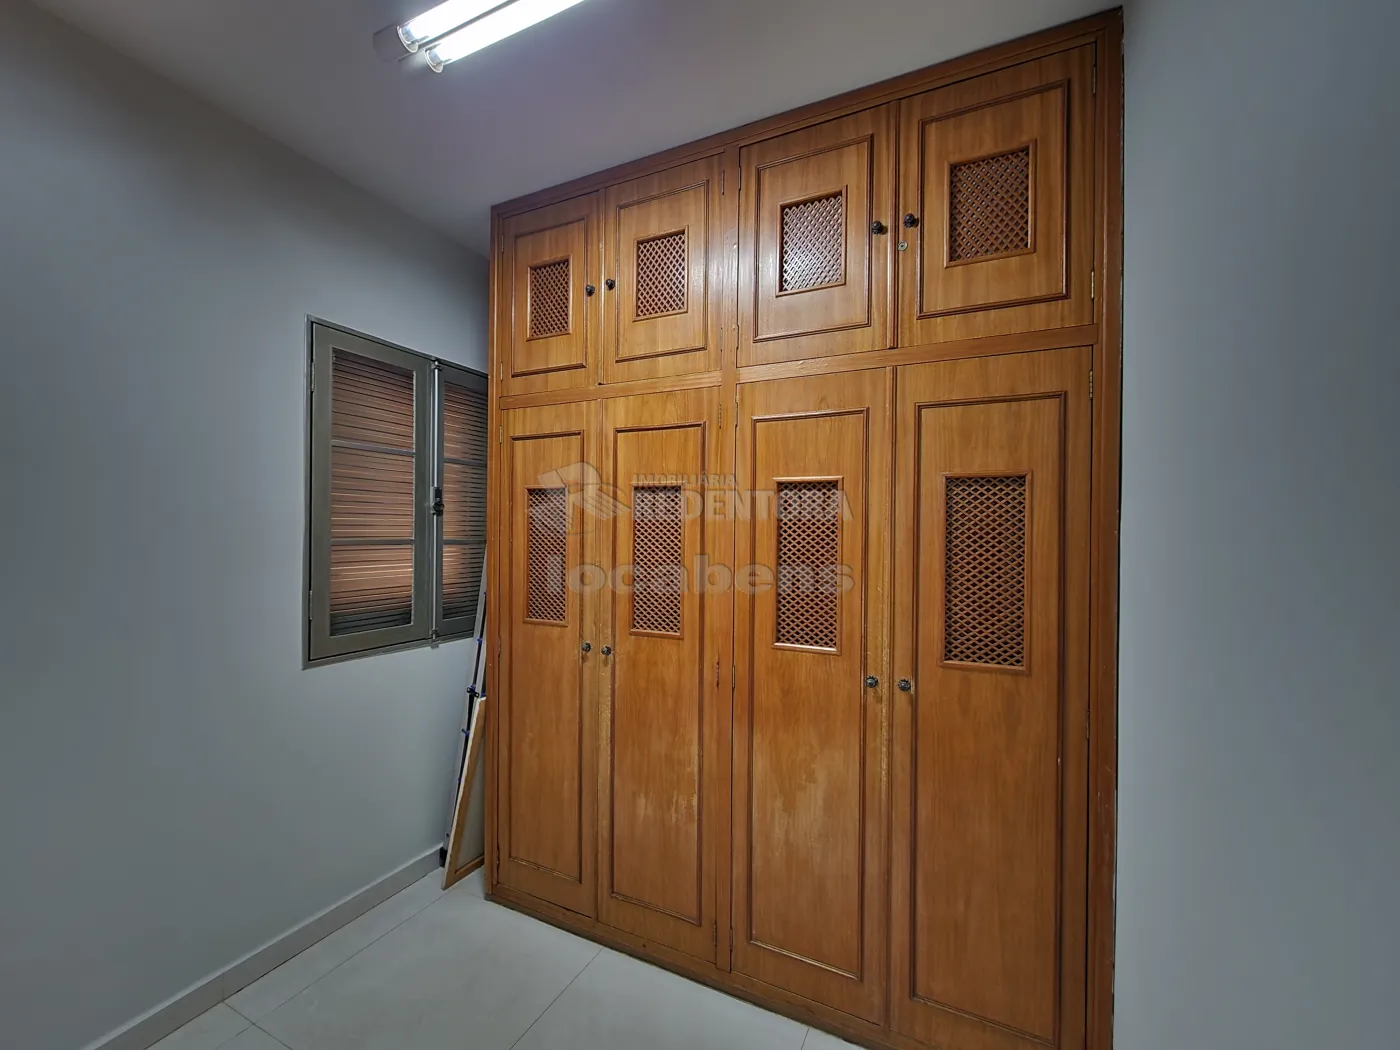 Alugar Apartamento / Padrão em São José do Rio Preto apenas R$ 1.250,00 - Foto 16